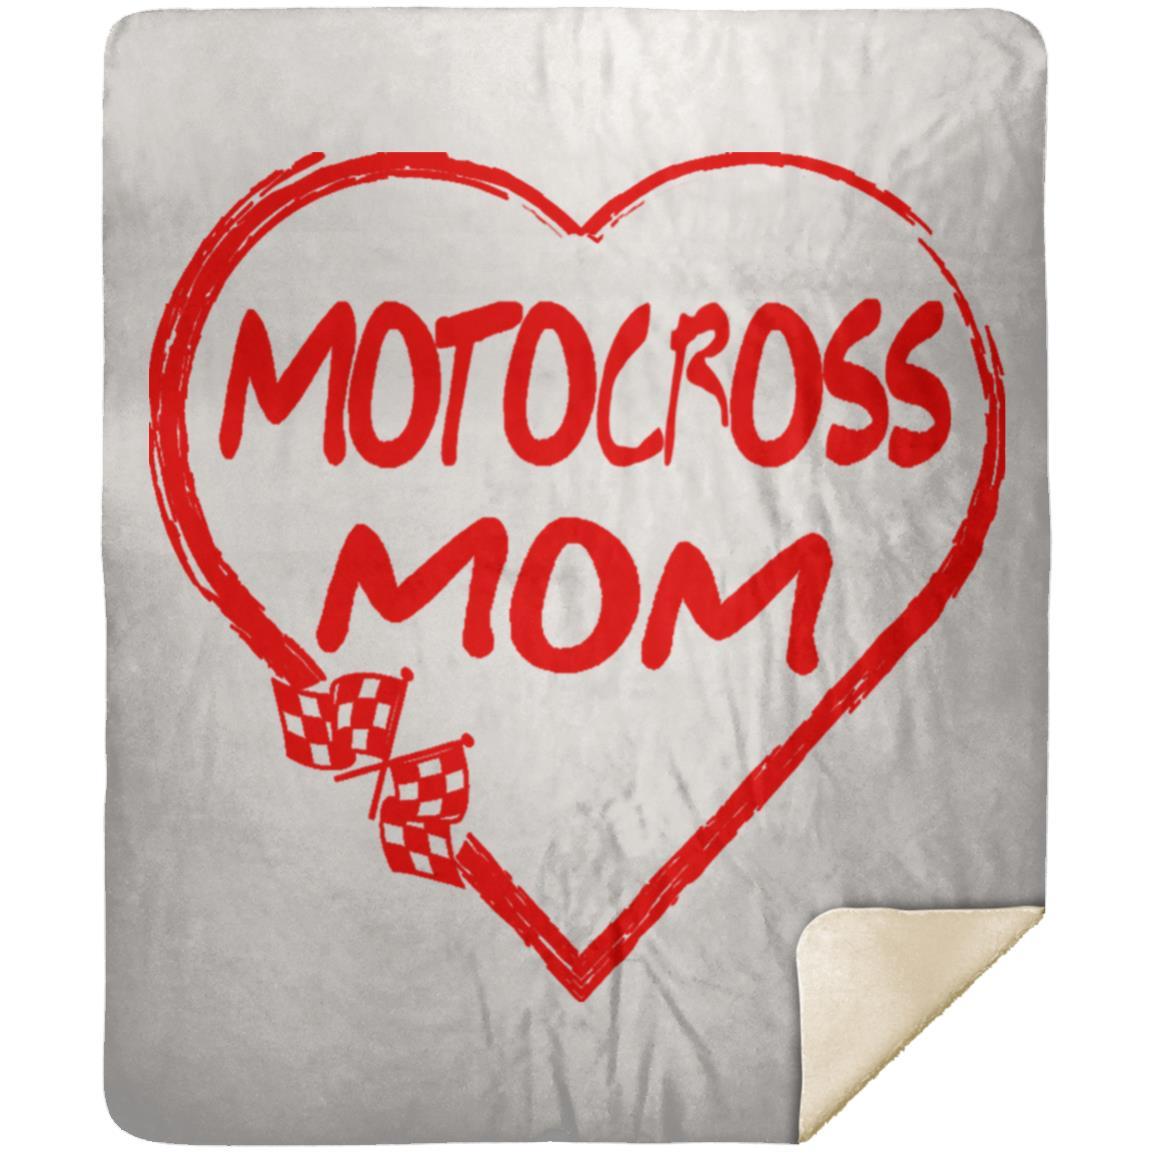 Motocross Mom Heart Premium Mink Sherpa Blanket 50x60